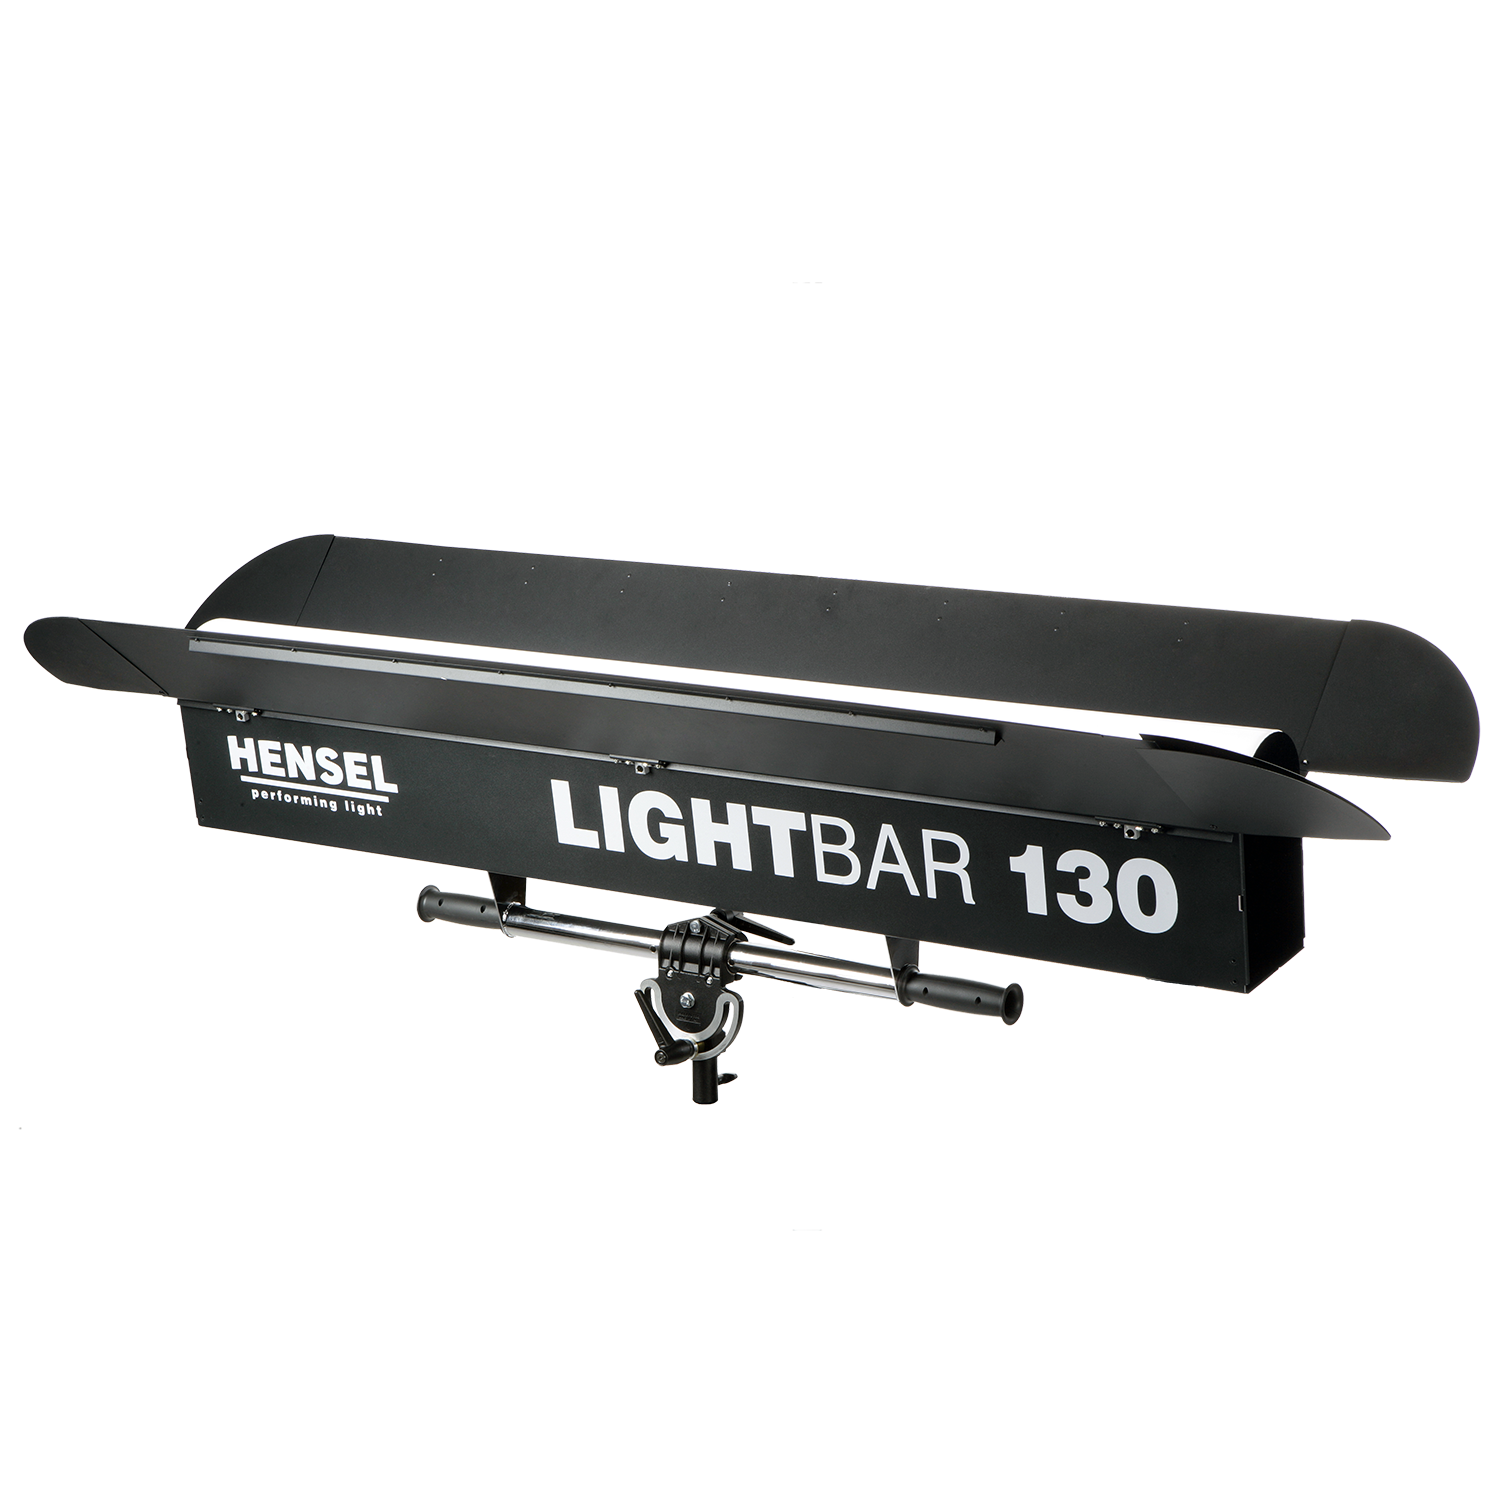 Lightbar 130